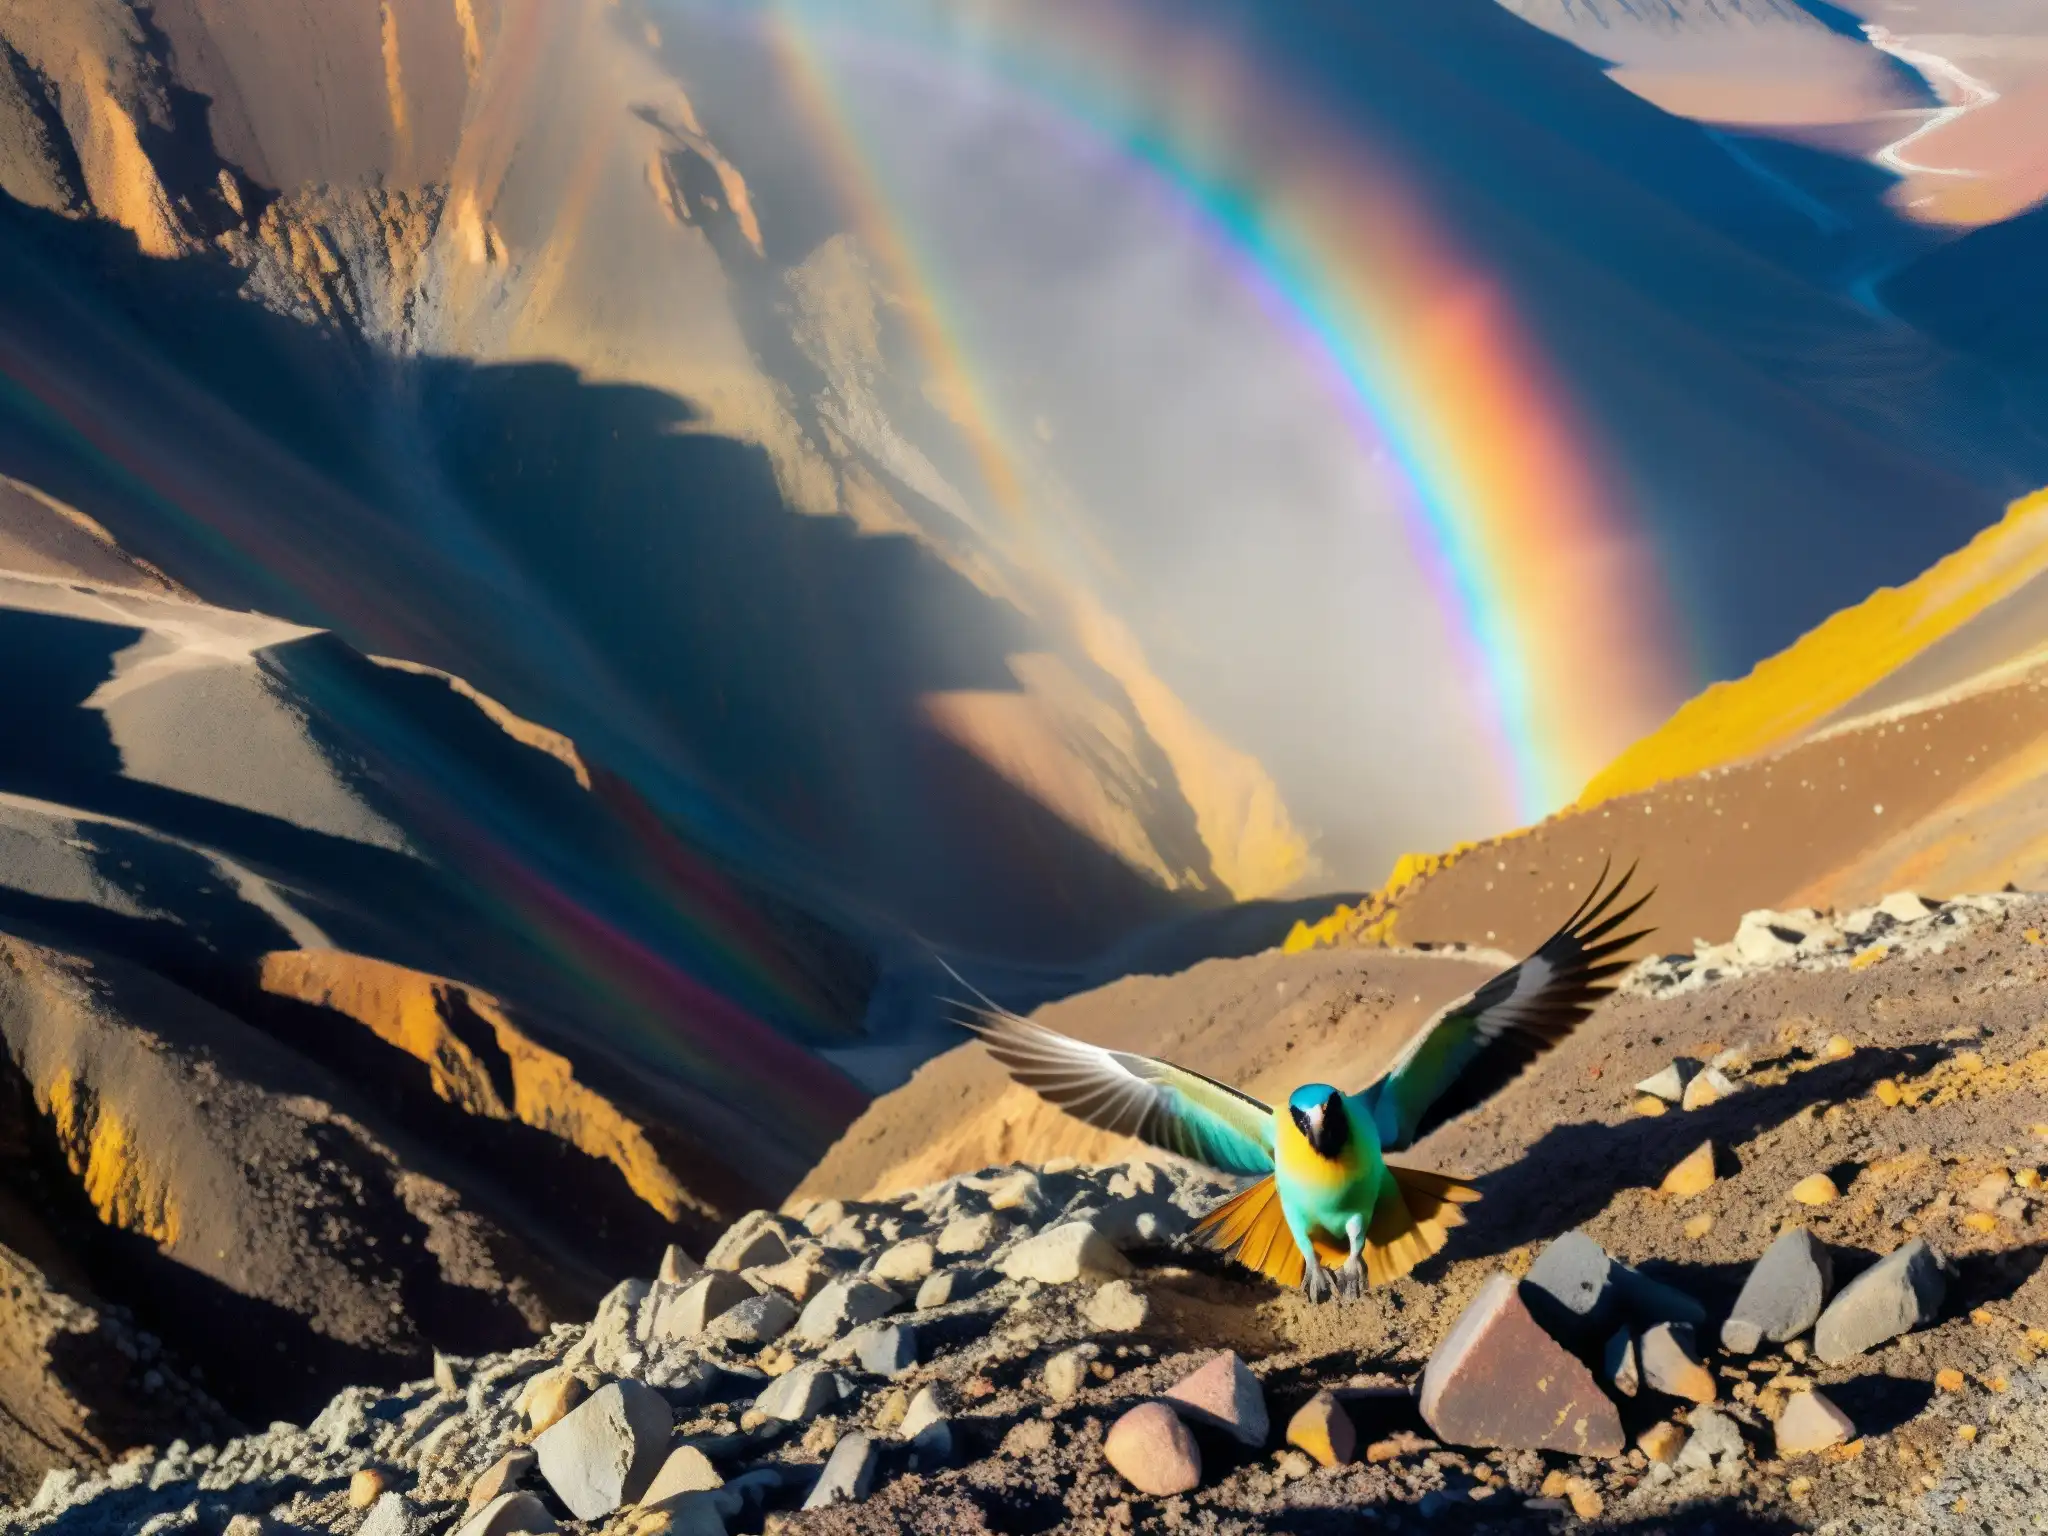 El majestuoso Alicanto ave fortuna vuela sobre minas en Chile, sus plumas iridiscentes brillan en la luz, asombrando a los mineros